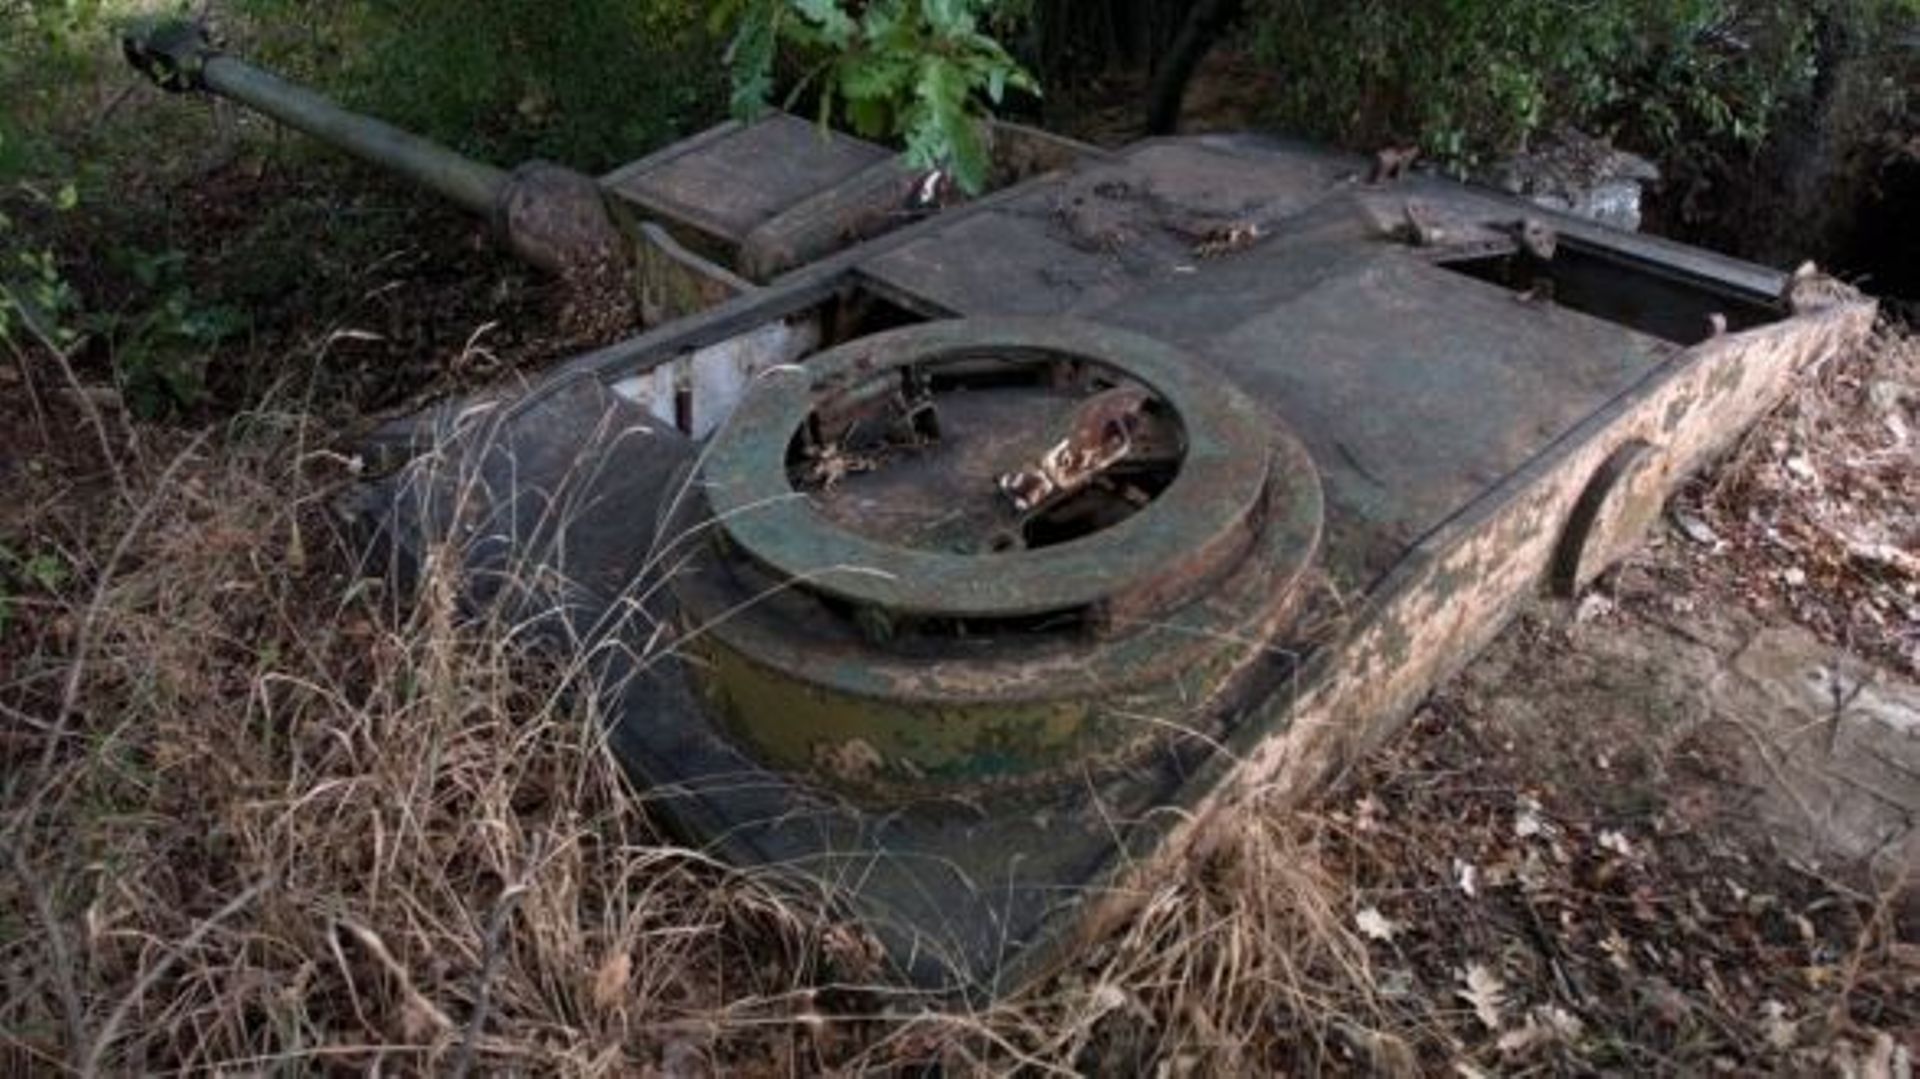 Russie: découverte de chars d'assaut en pleine forêt